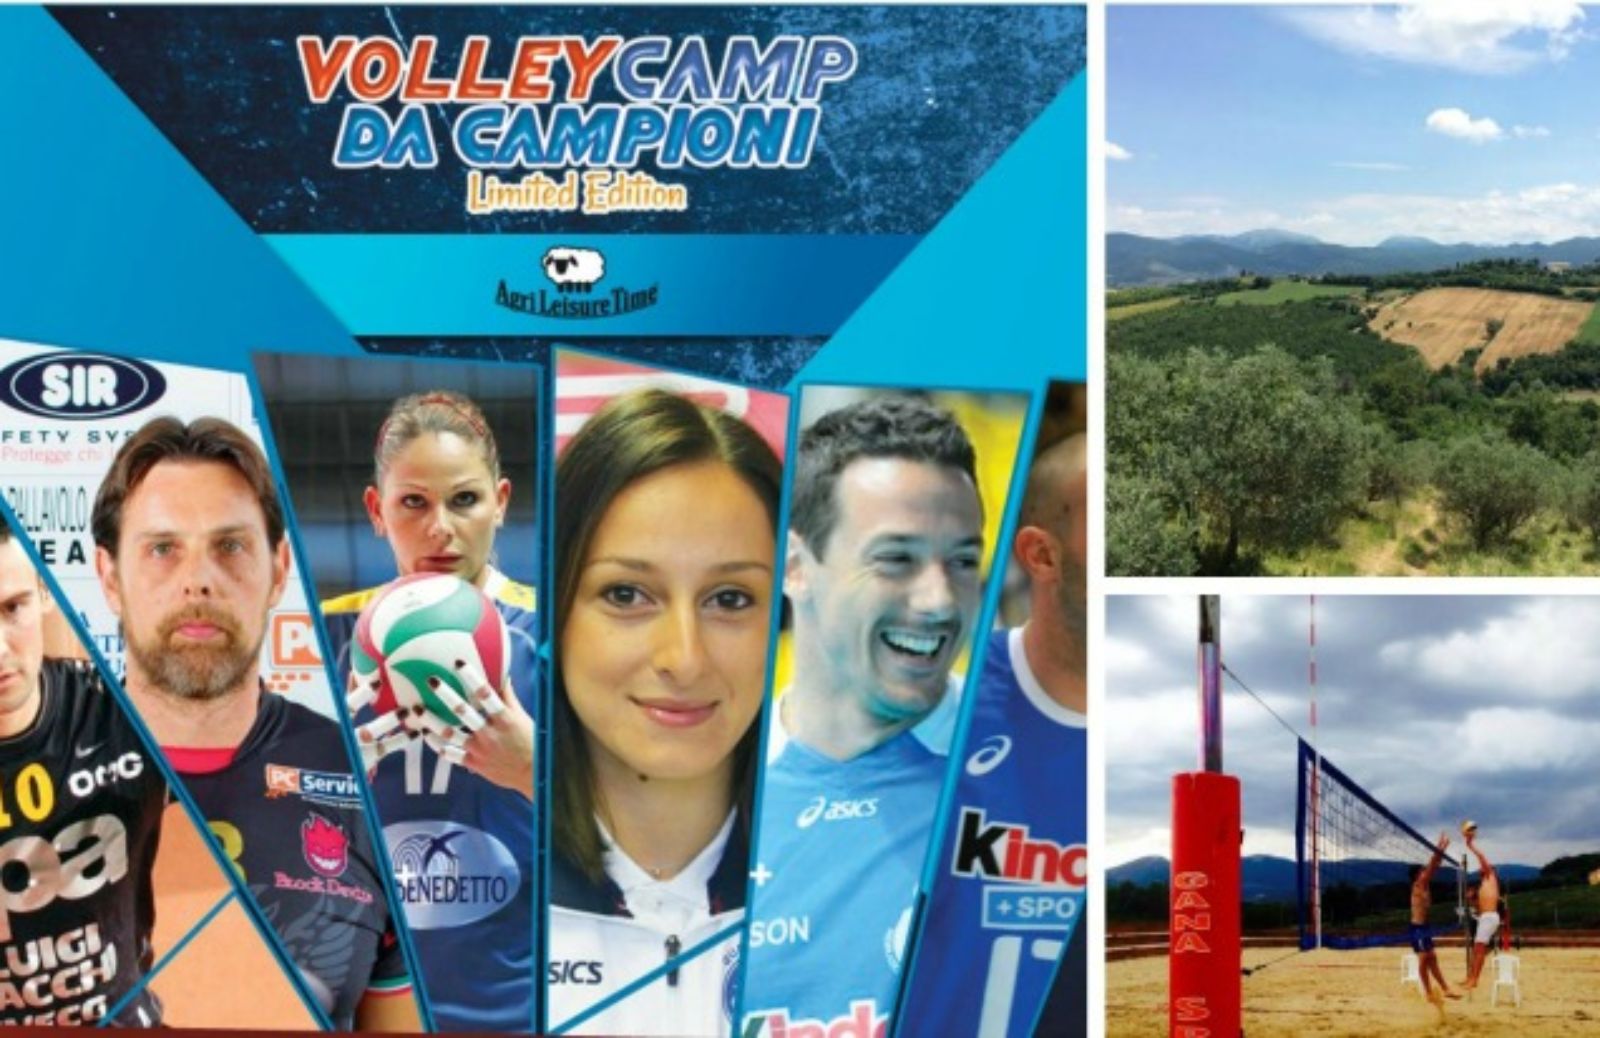 Volley Camp da Campioni: sport, lingue straniere, divertimento e natura si incontrano in Umbria